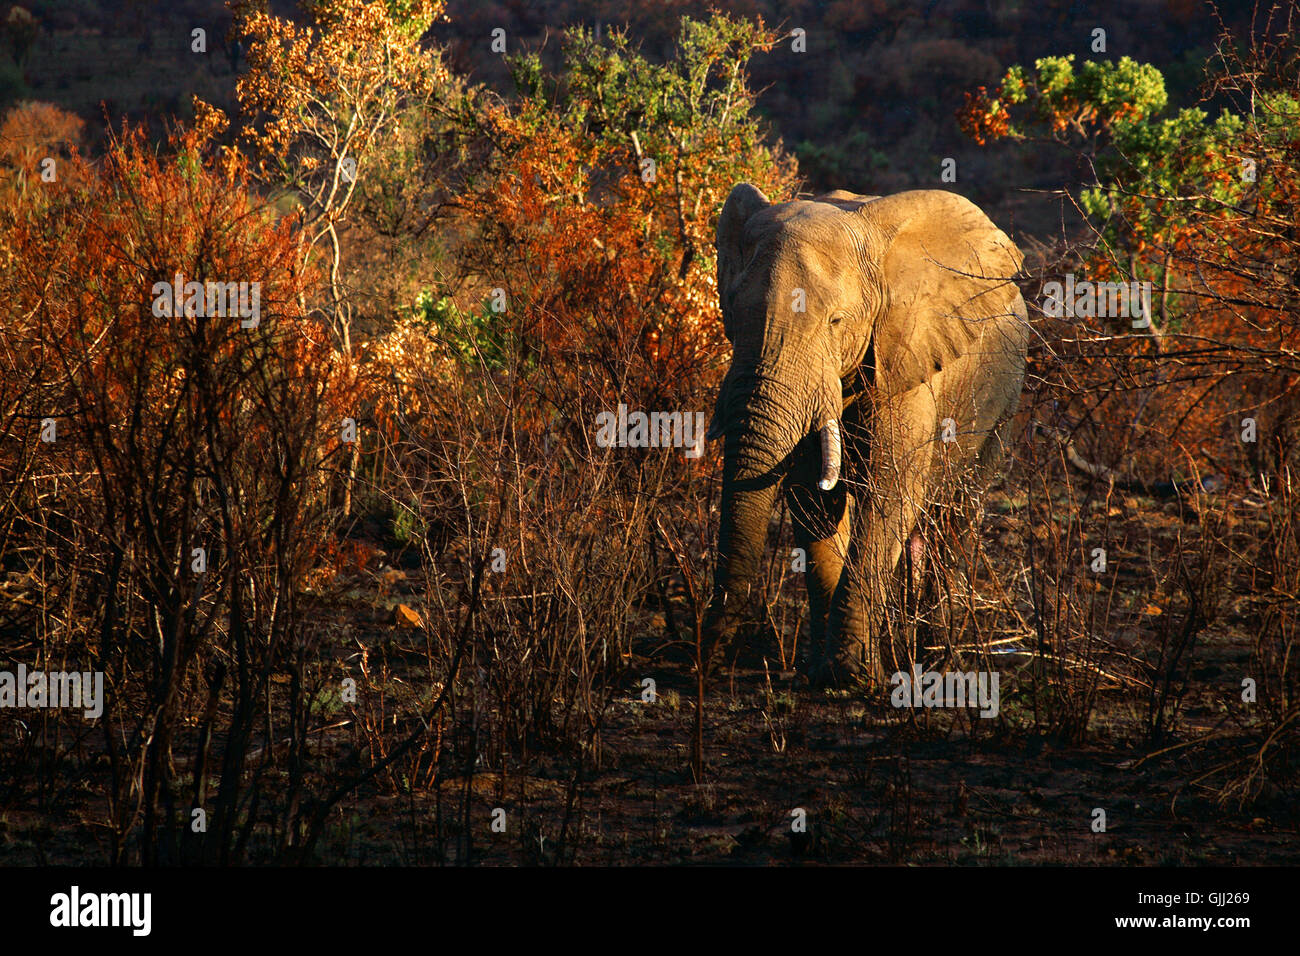 elephant evening bush Stock Photo